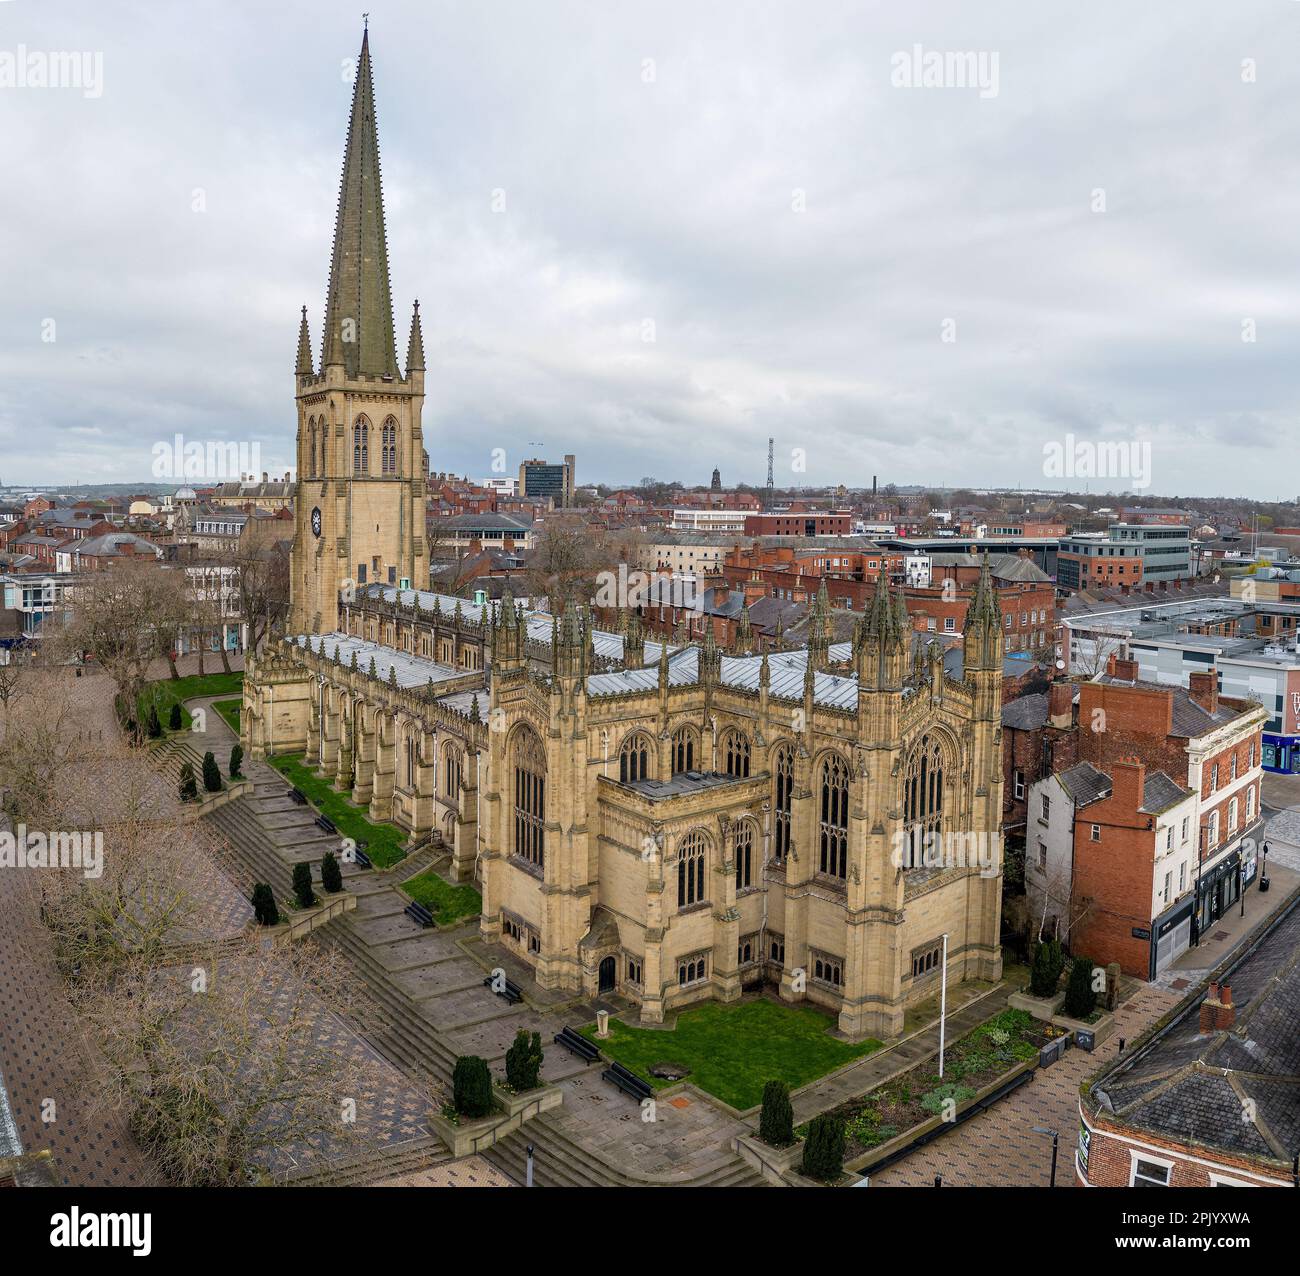 Centro città di Wakefield. Vista aerea della città del West Yorkshire, della cattedrale e del fiume calder Foto Stock